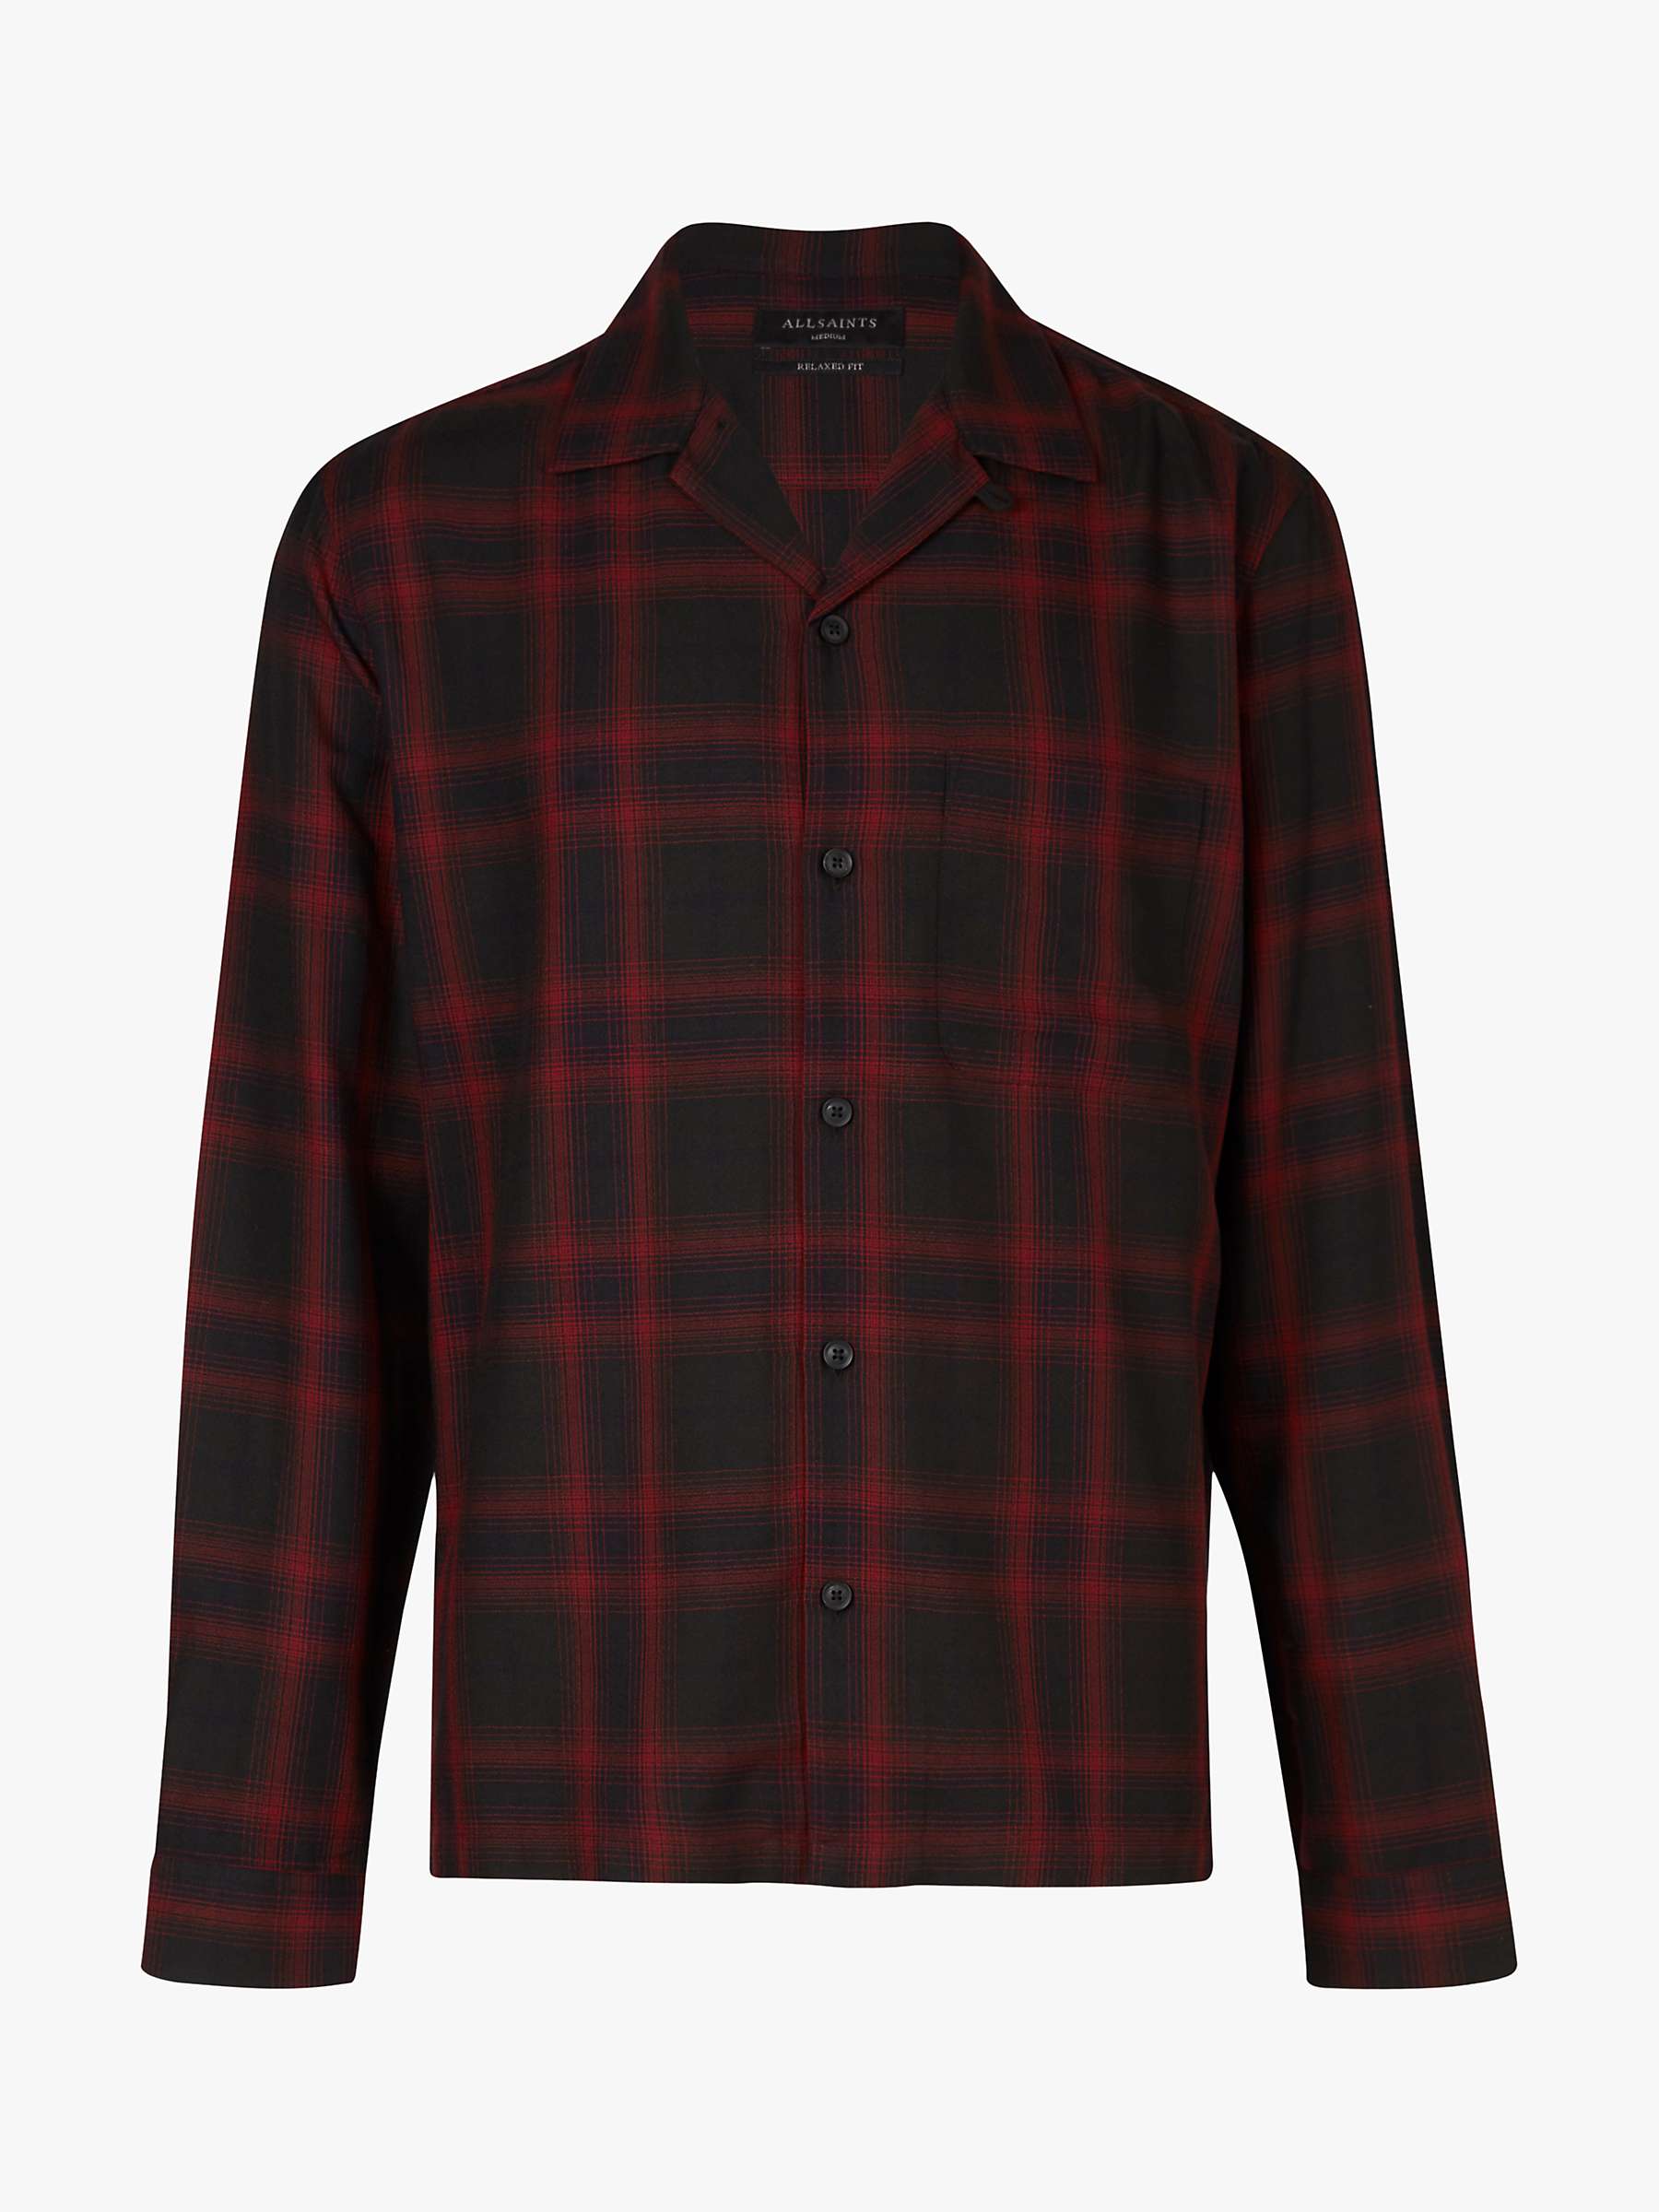 Buy AllSaints Westel Check Shirt, Jet Black/Red Online at johnlewis.com